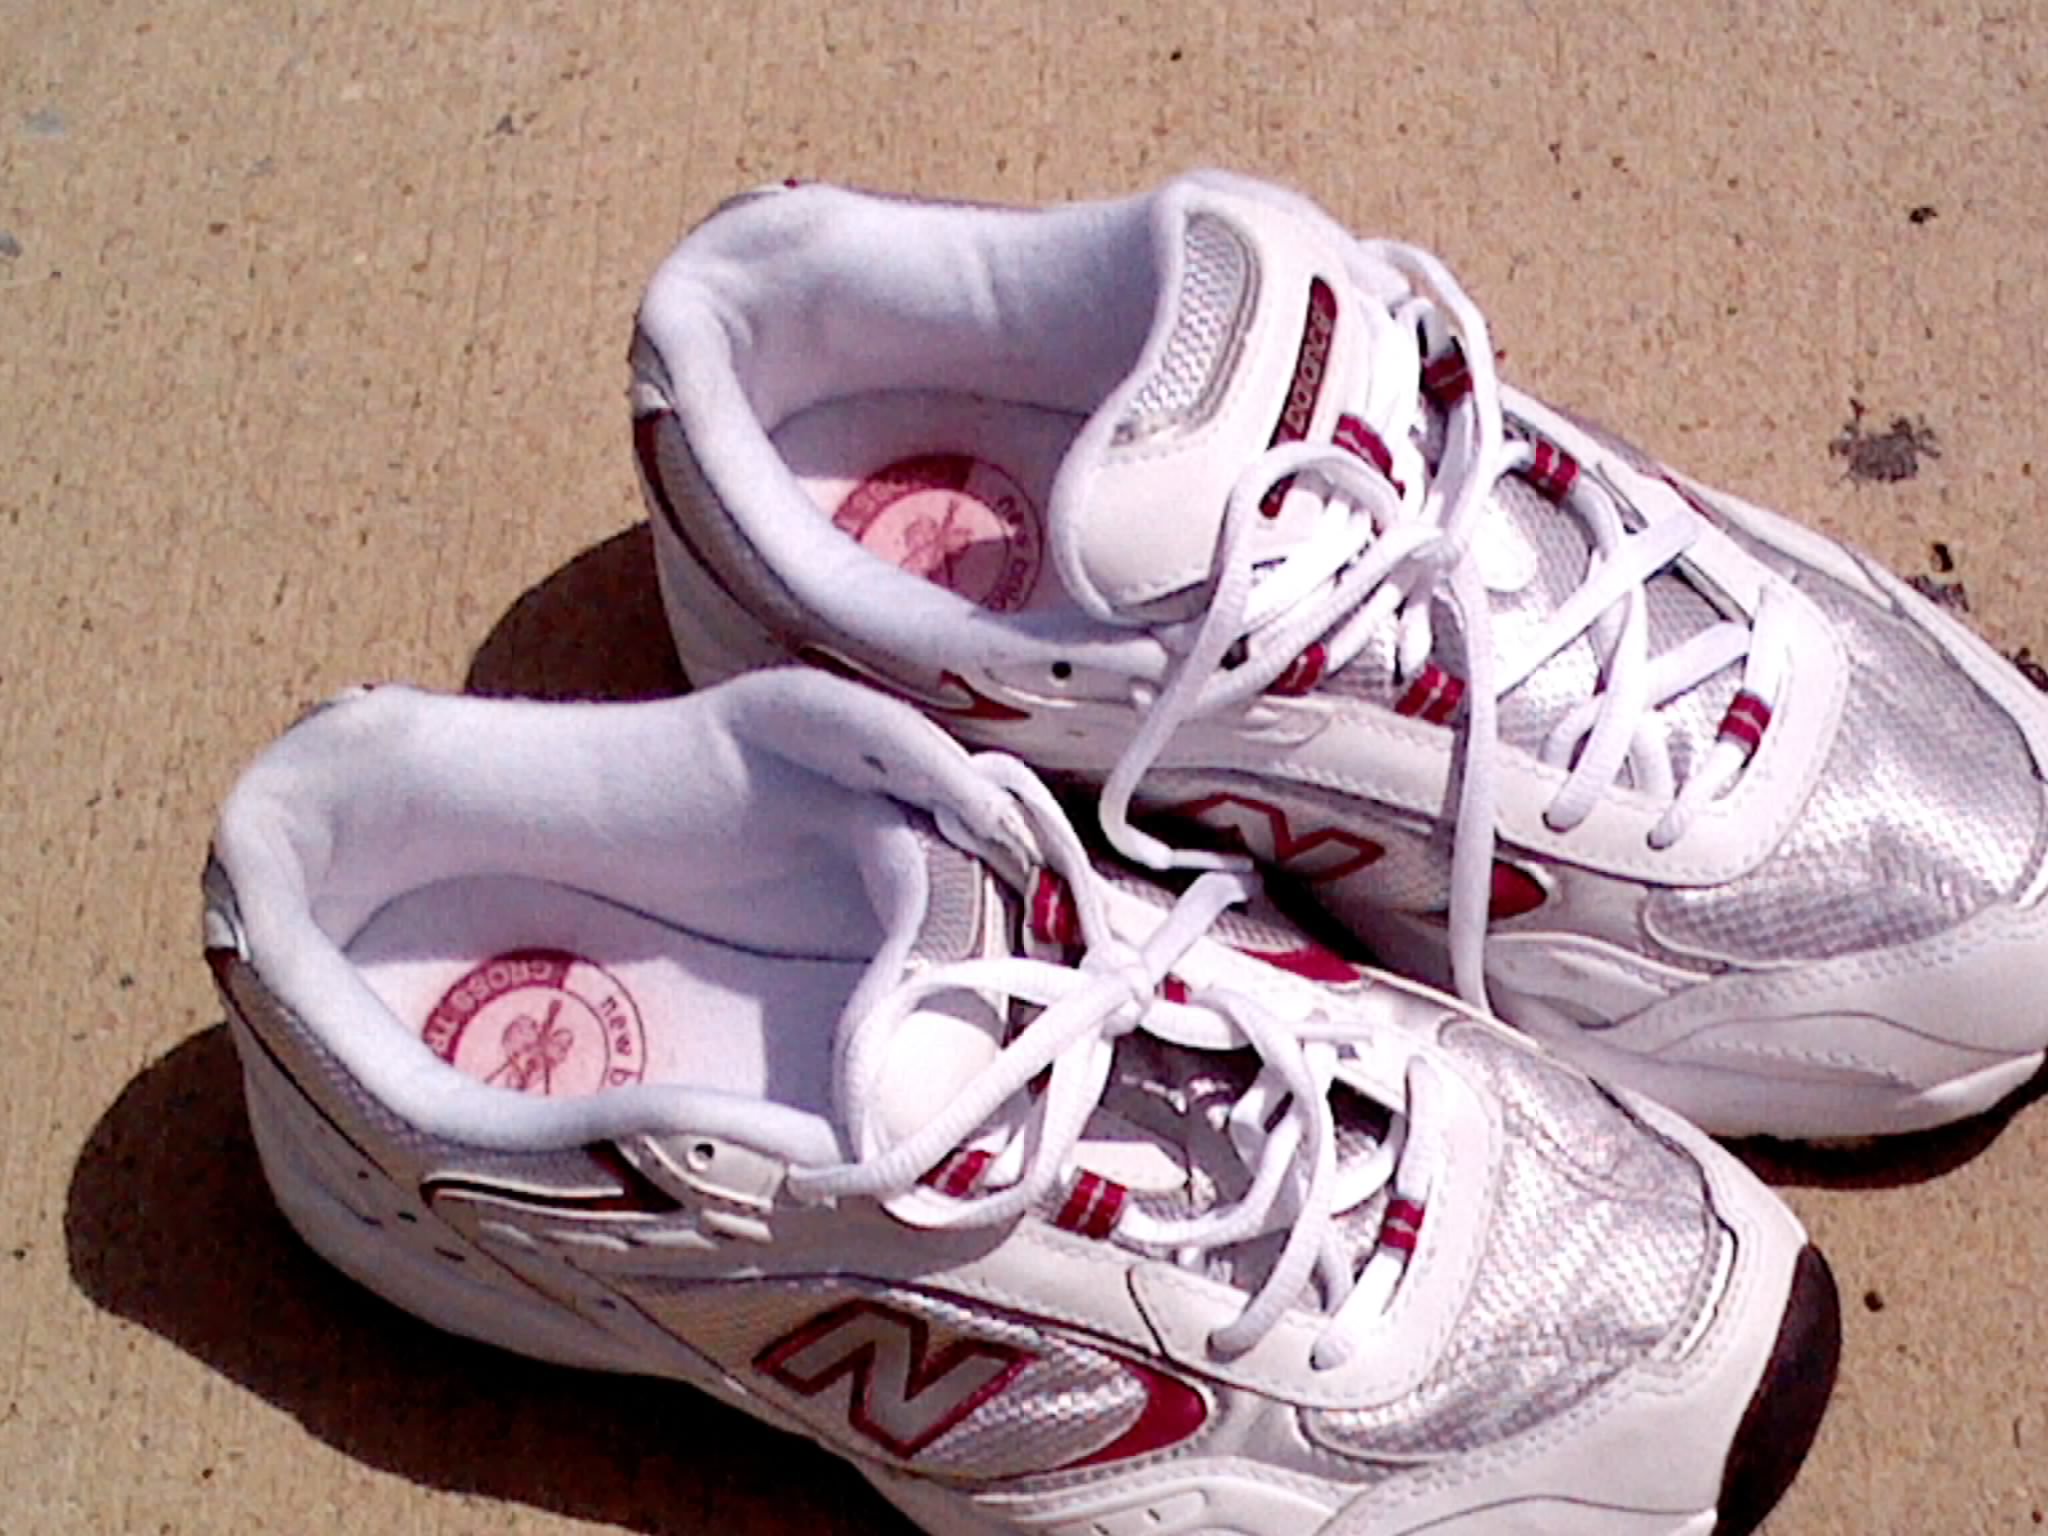 New Balance women running shoes-9 1/2